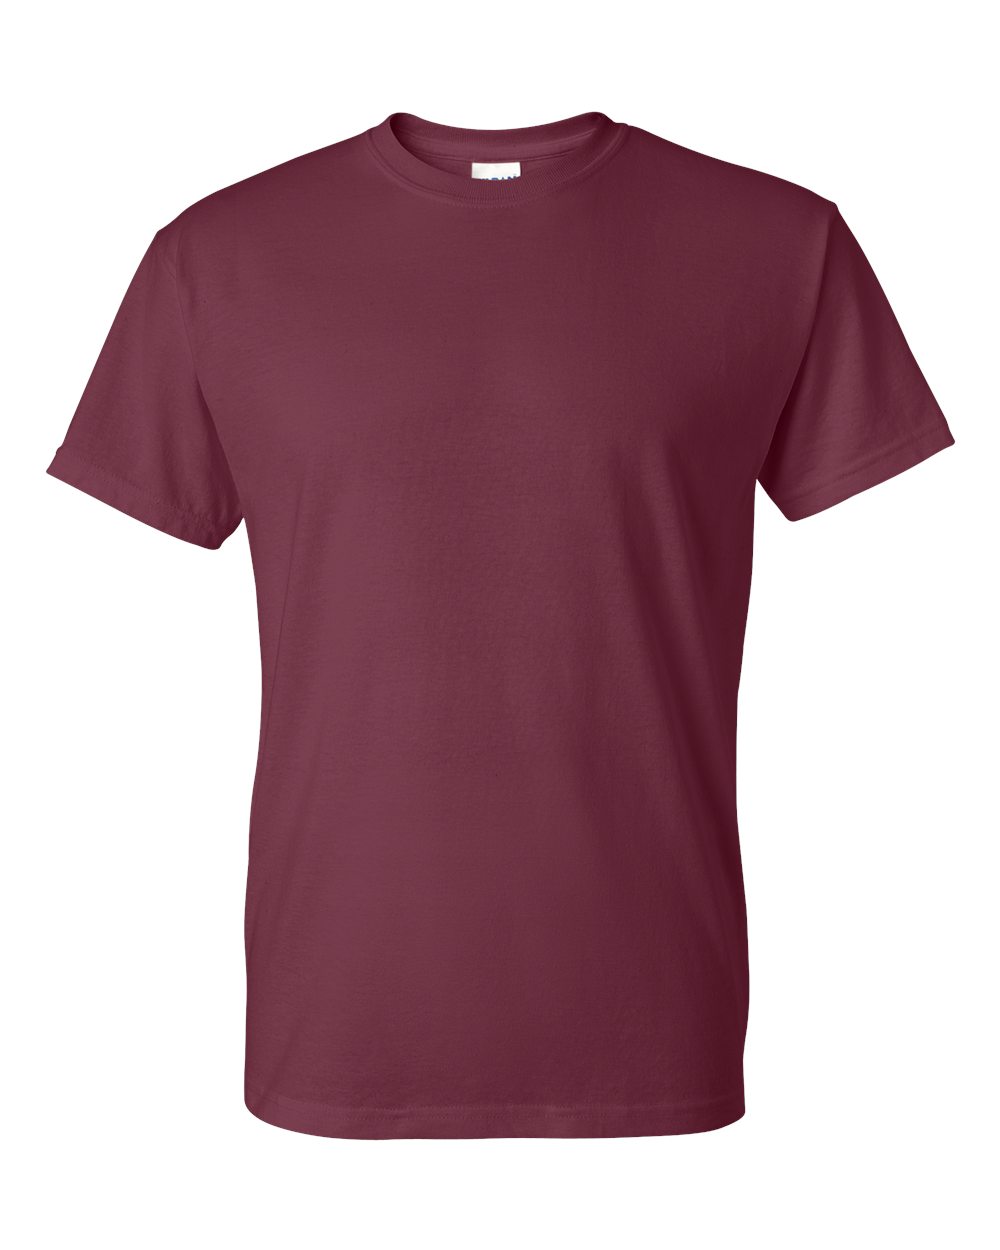 Gildan 8000 - DryBlend 50/50 Cotton/Poly T-Shirt $3.54 - T-Shirts